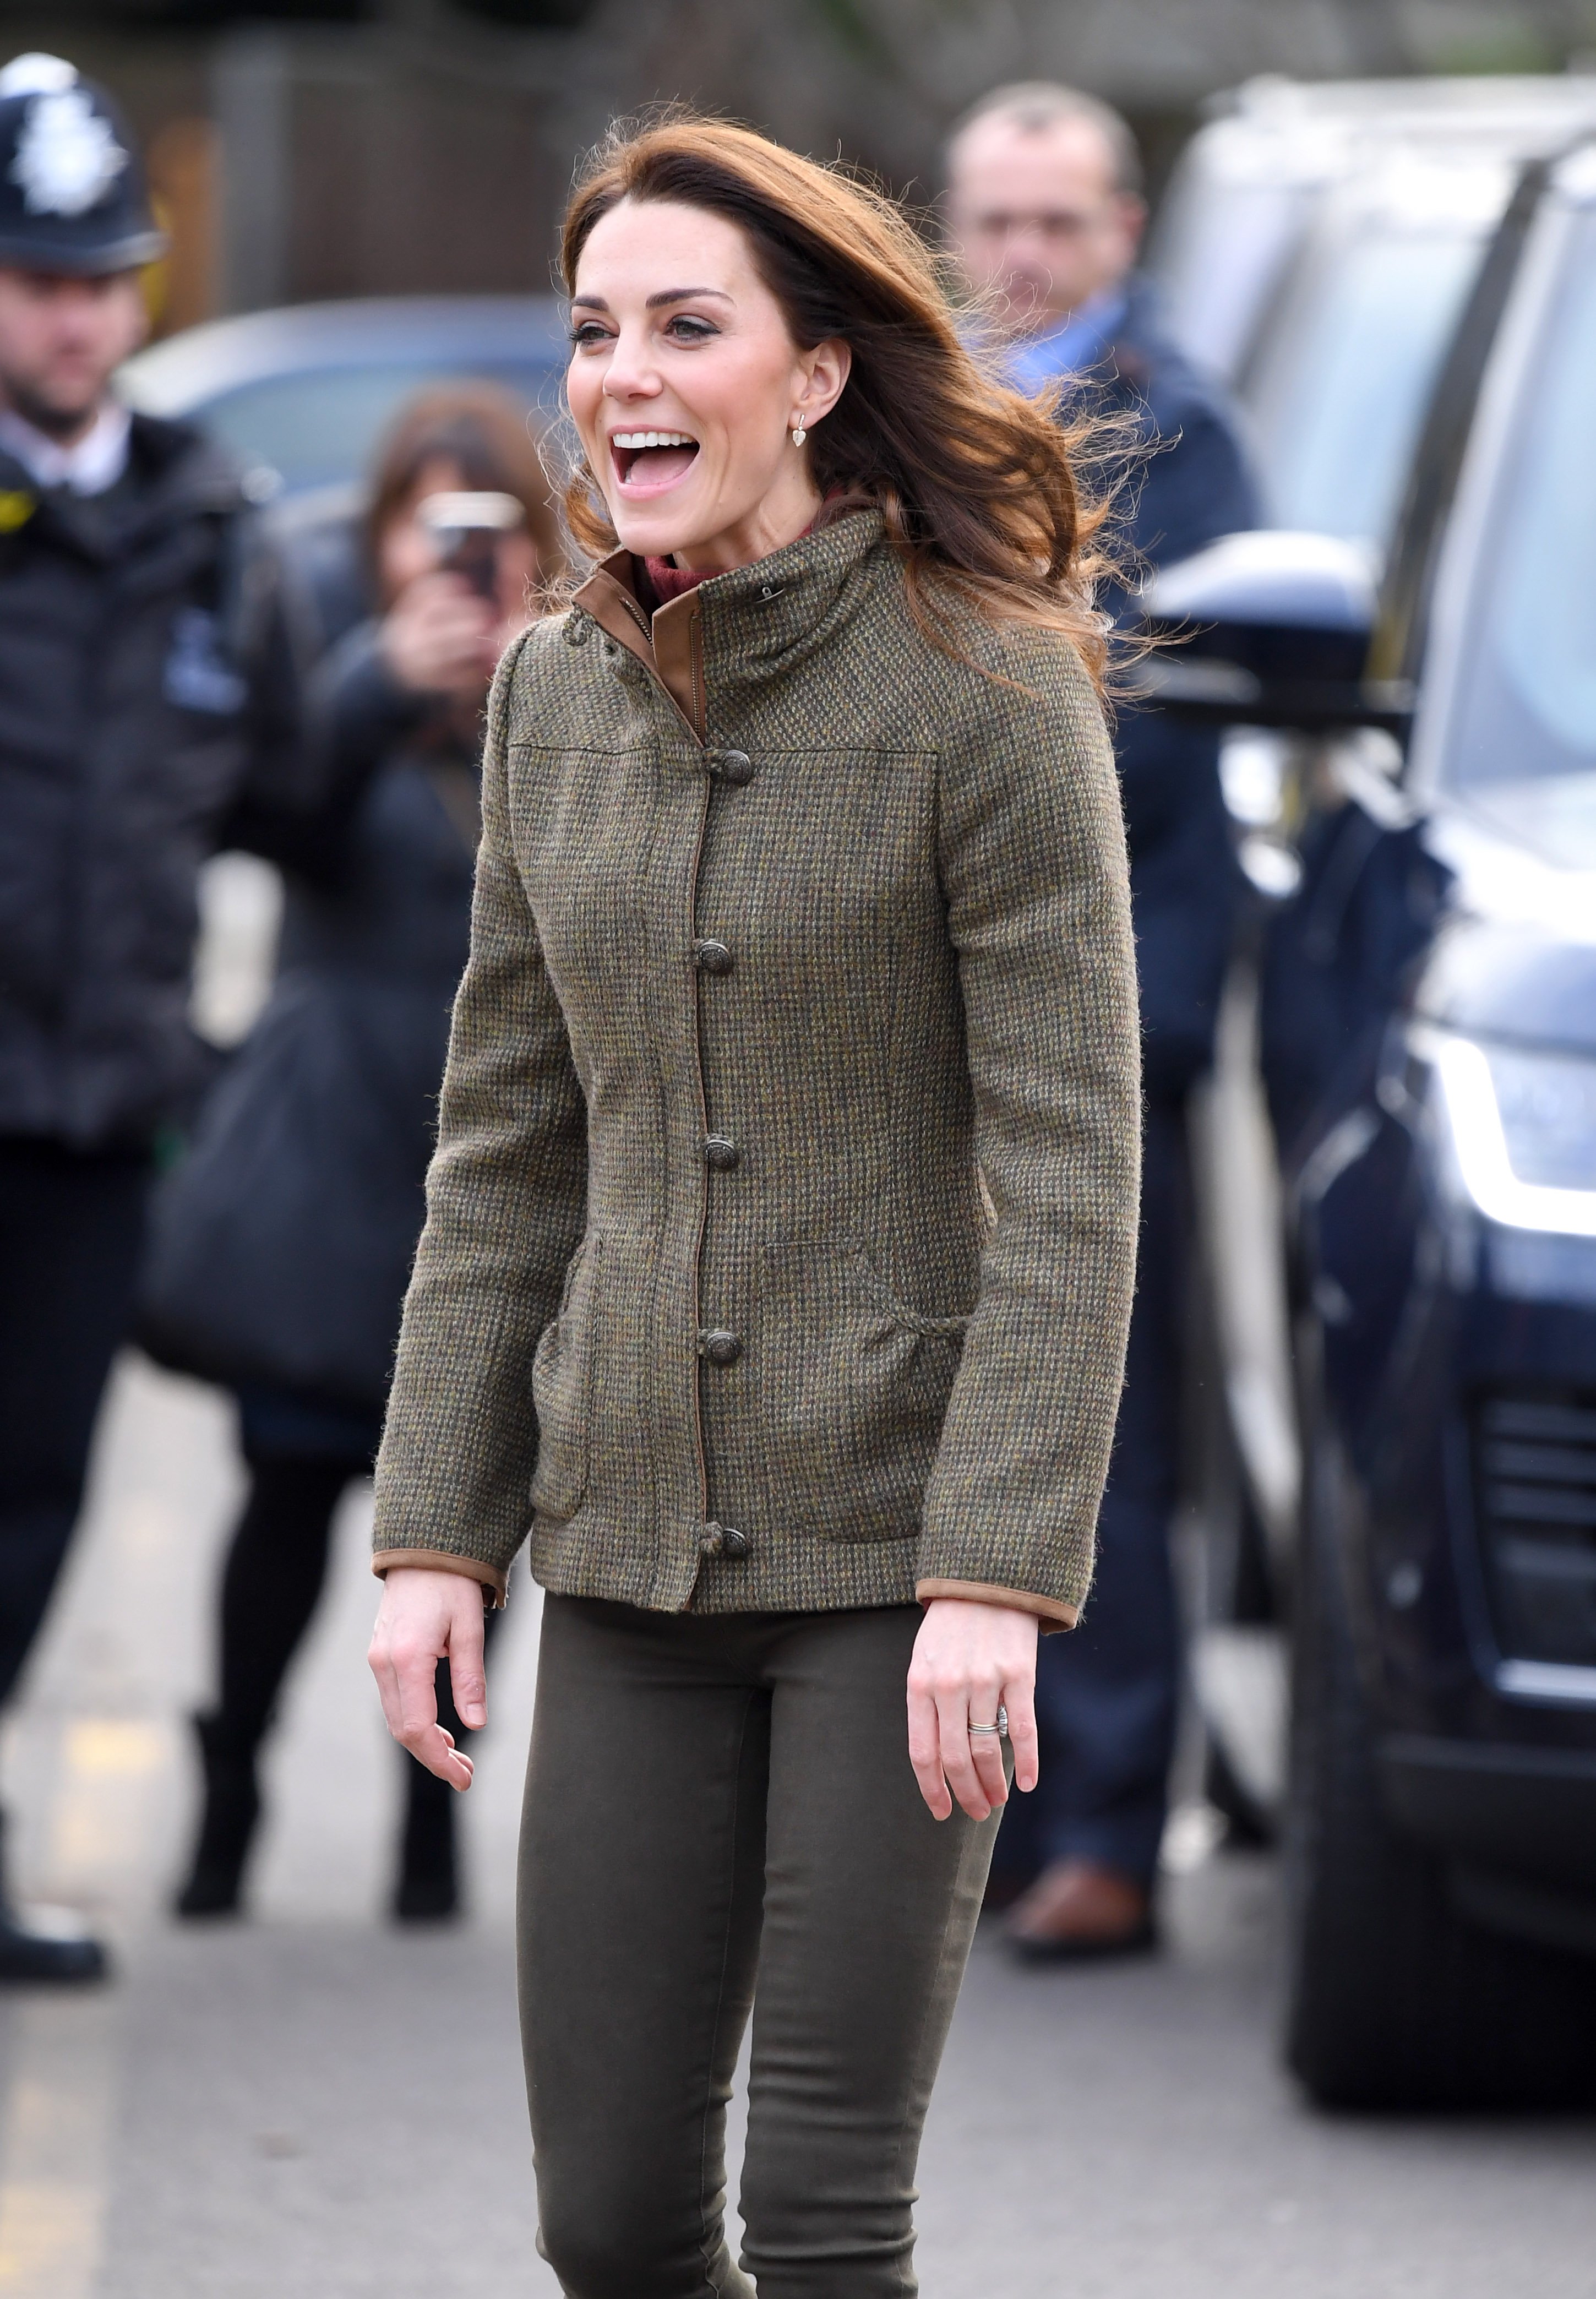 Kate Middleton paseando por los jardines del rey Henry el 15 de enero de 2019 en Londres, Reino Unido. | Foto: Getty Images